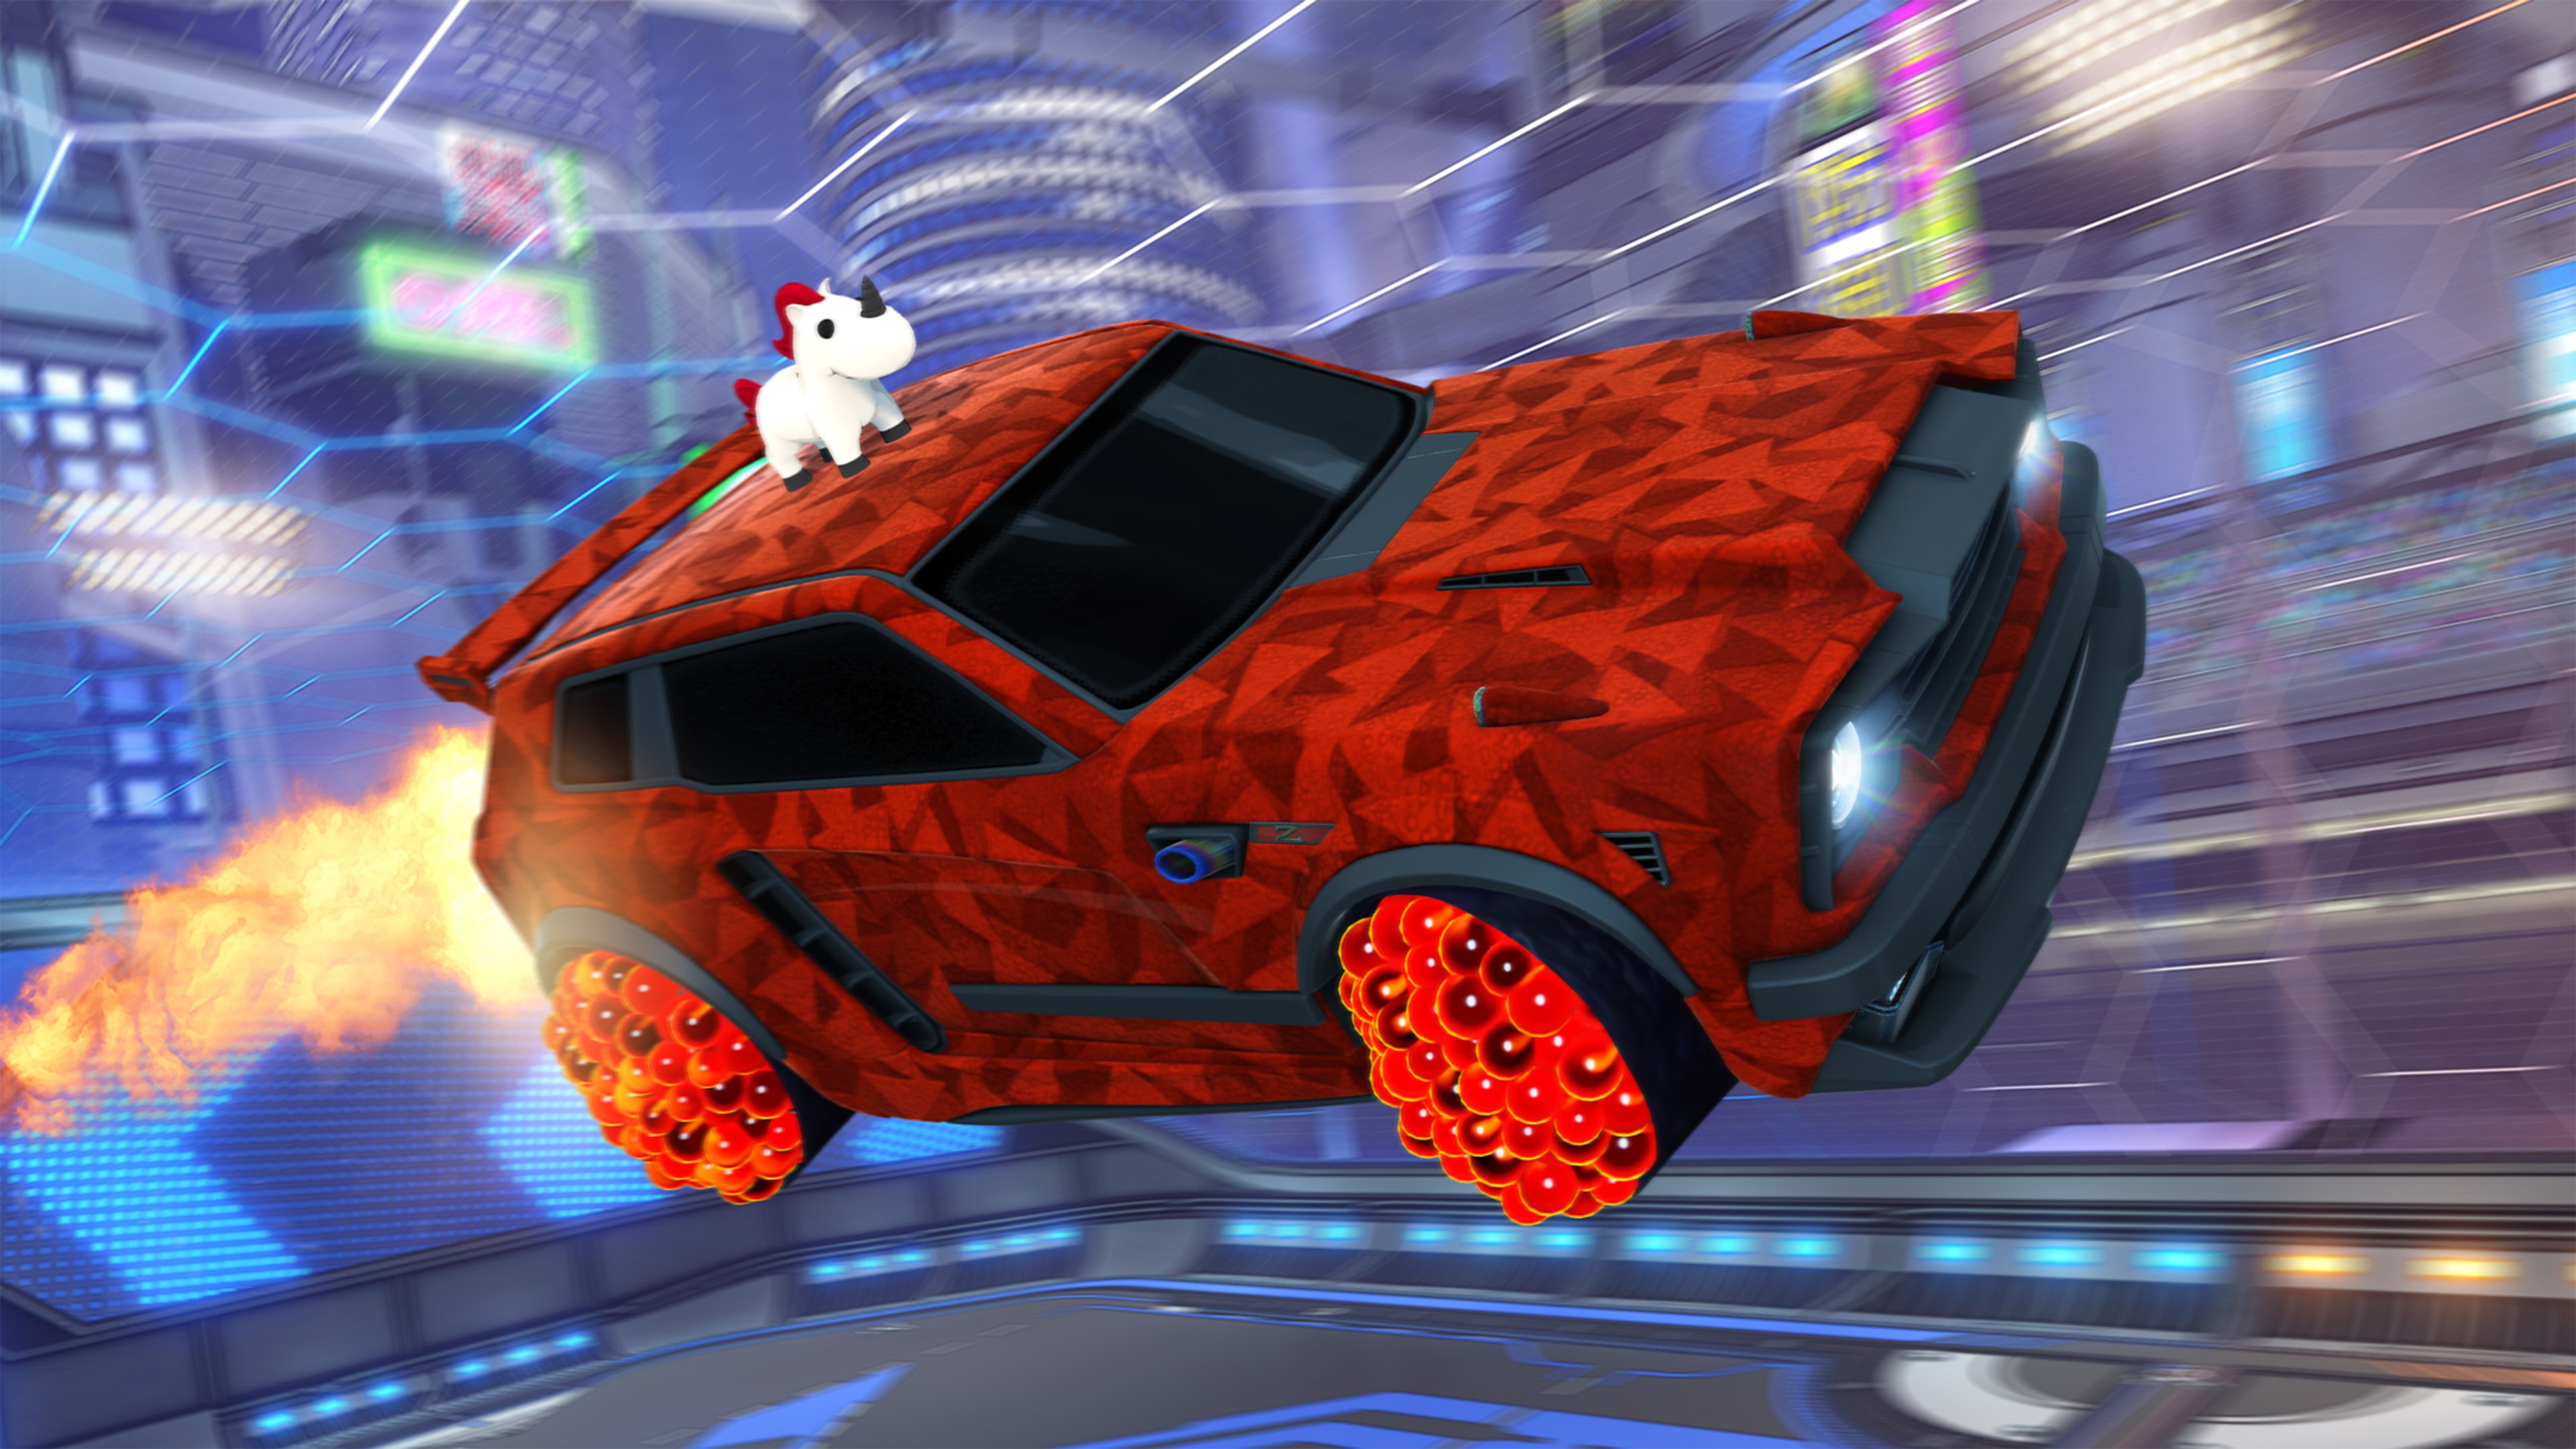 《火箭联盟》截屏展示车顶有形似独角兽的动物、红色几何图案涂装的赛车